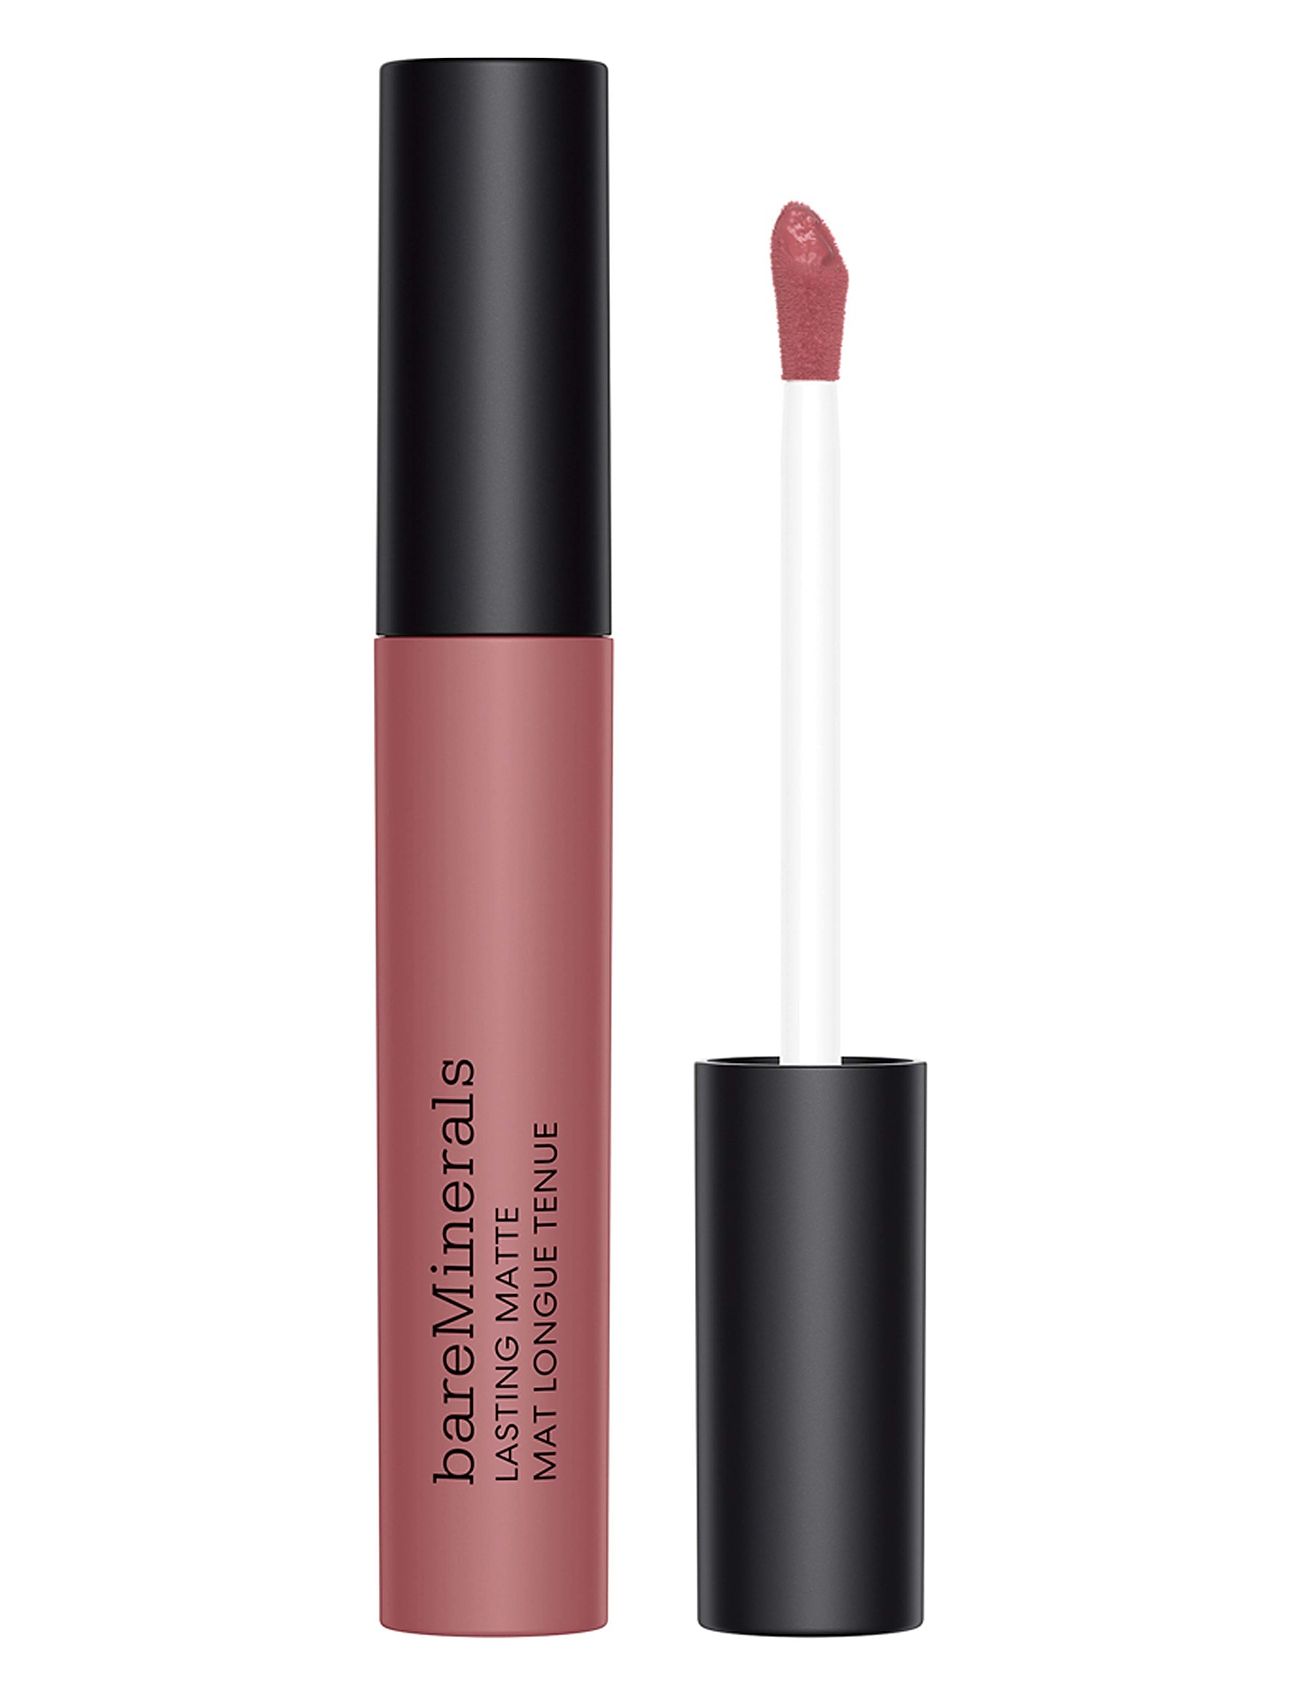 Mineralist Comfort Matte Splendid Lipgloss Makeup Pink BareMinerals